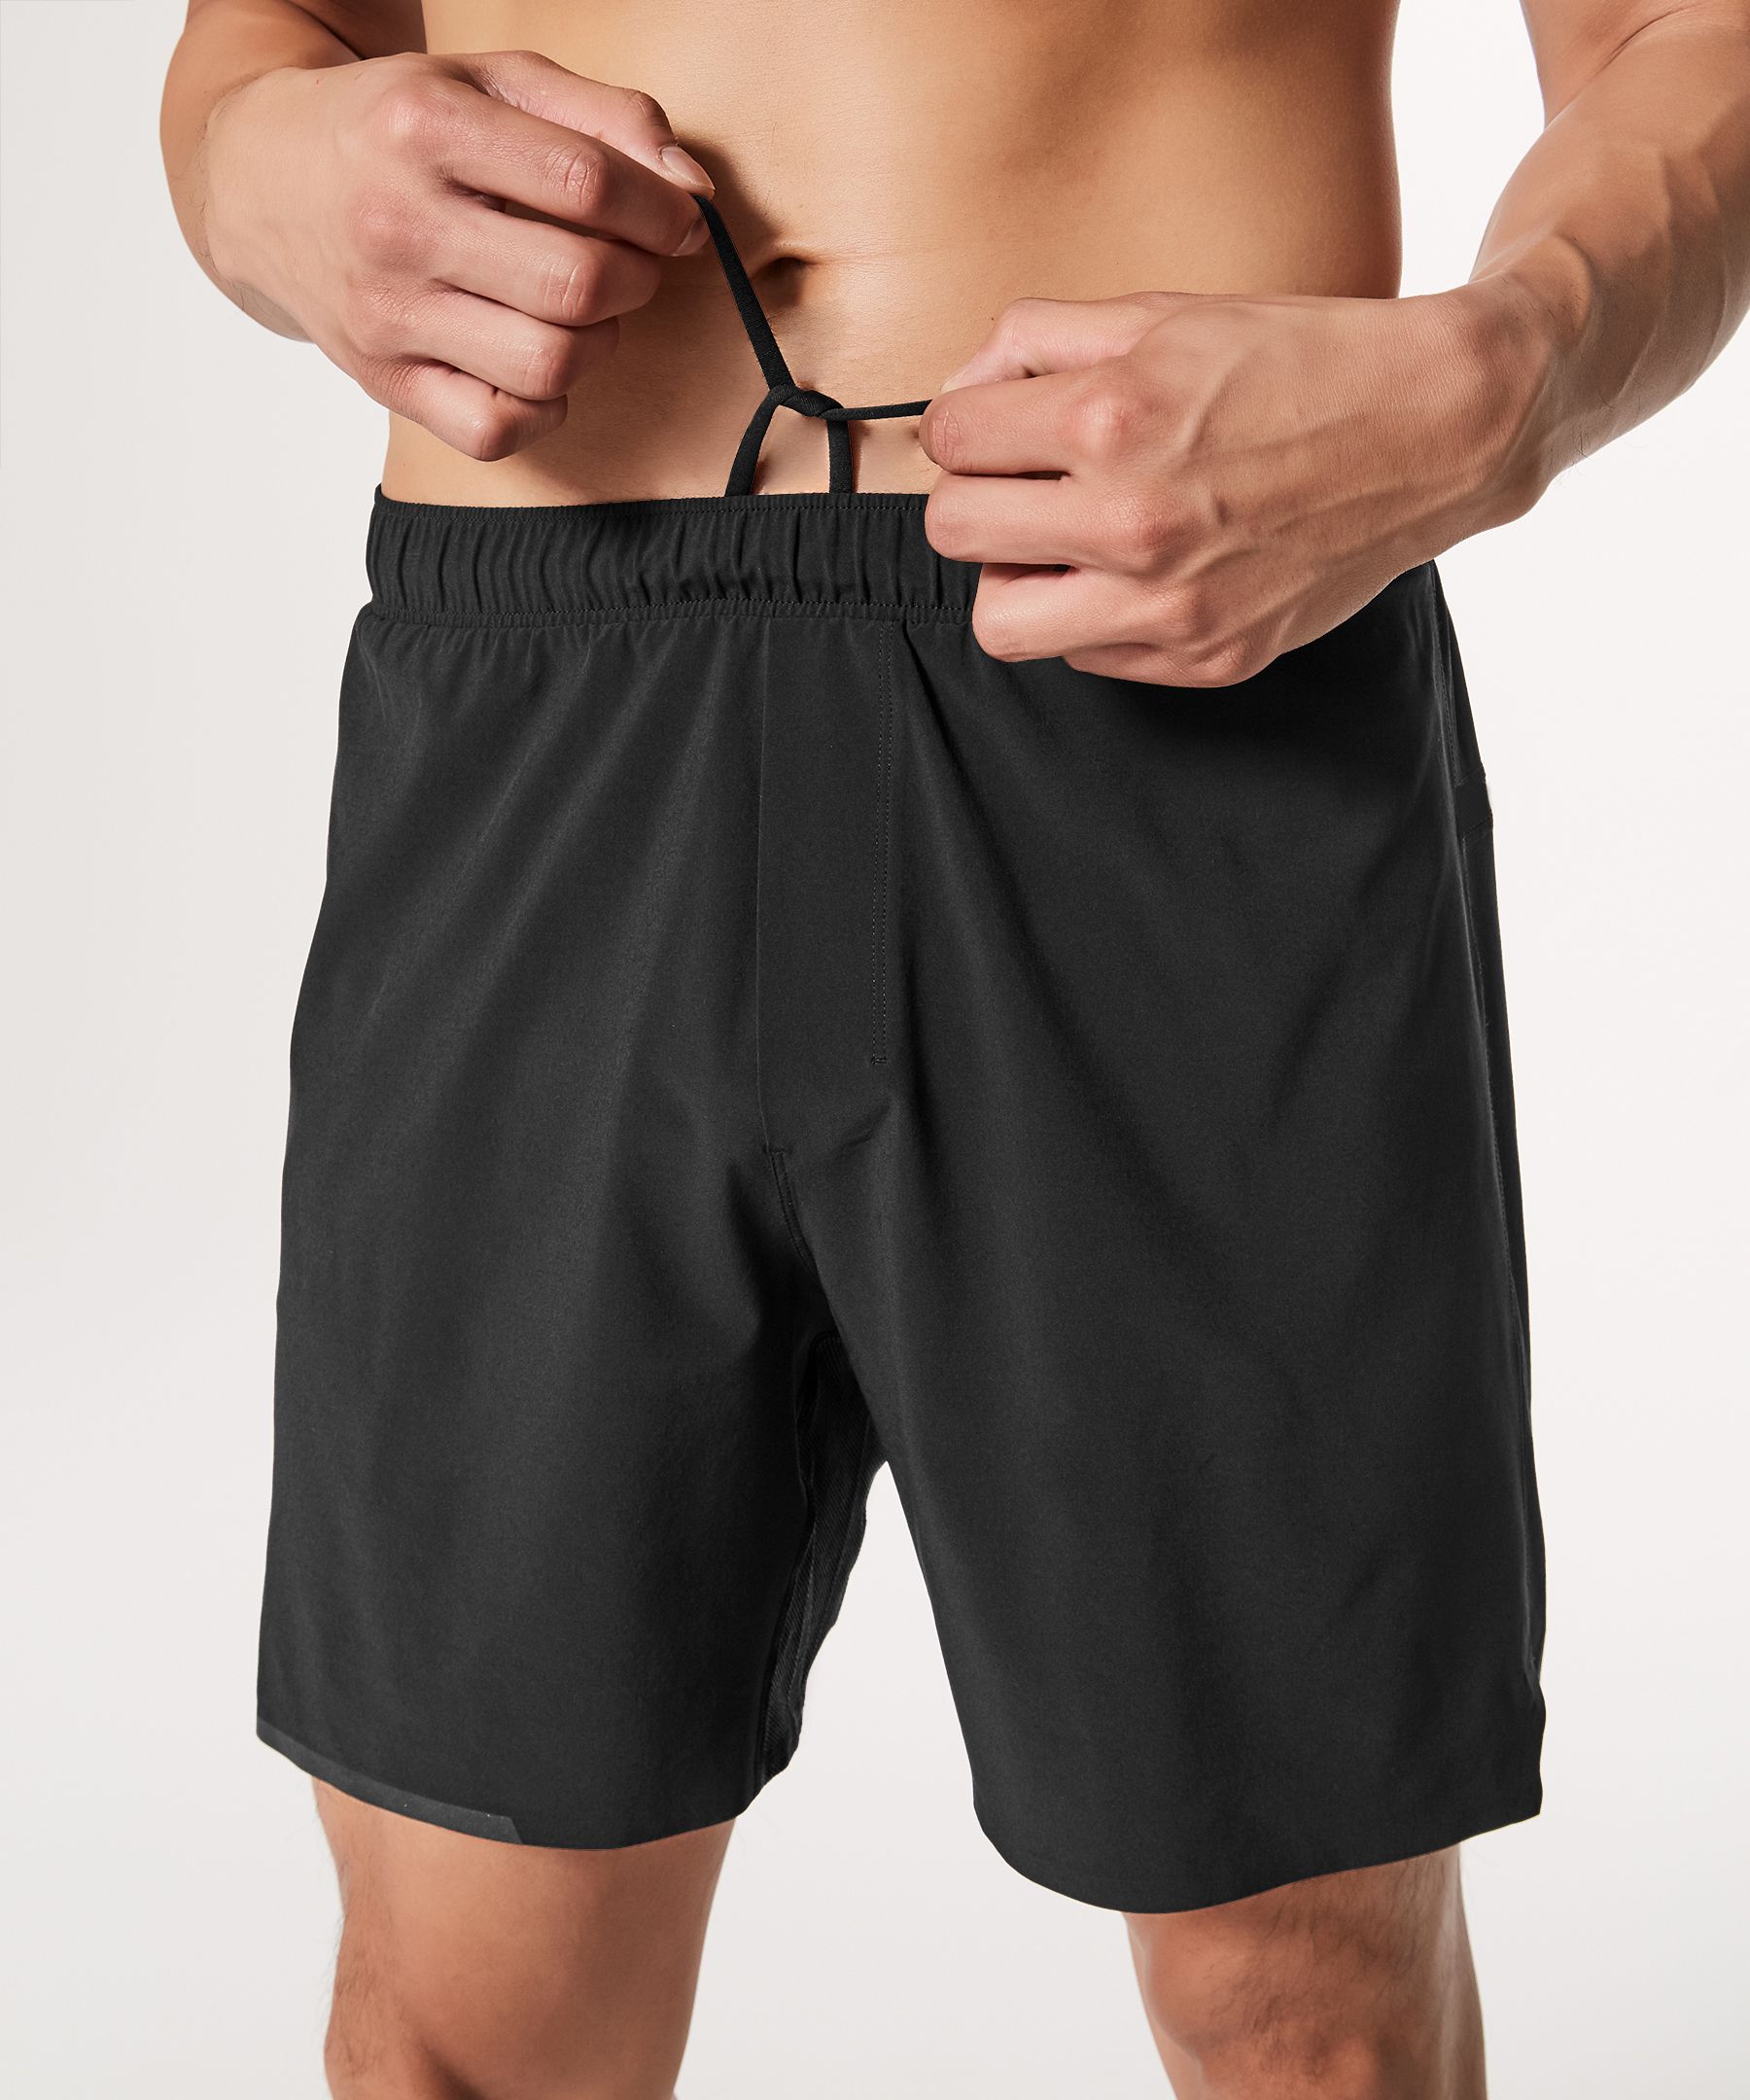 lululemon shorts men's 7mm